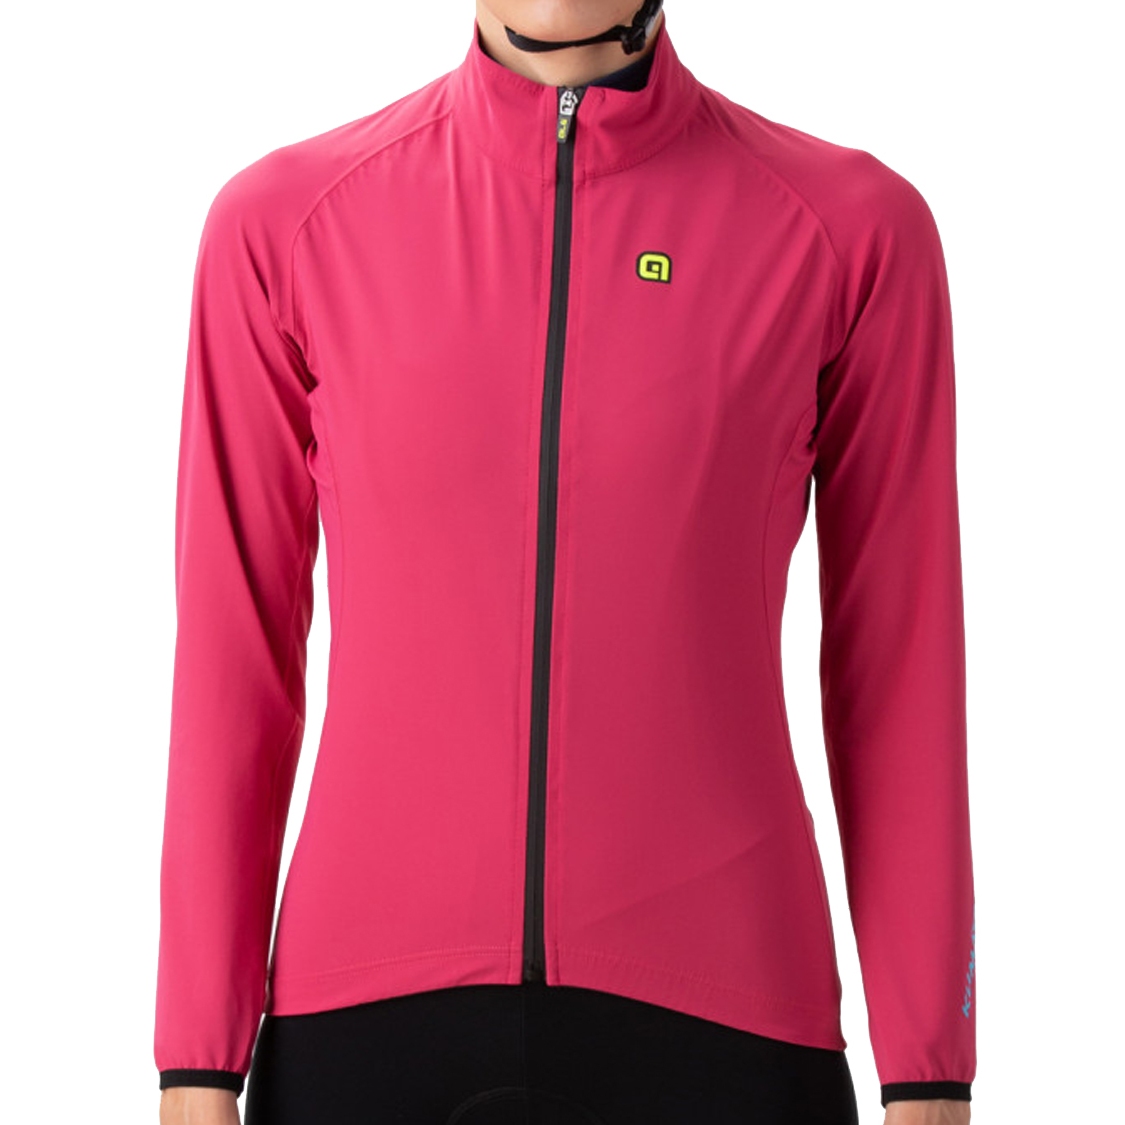 Produktbild von Alé KLIMATIK Racing Wasserdichte Jacke Damen - pink